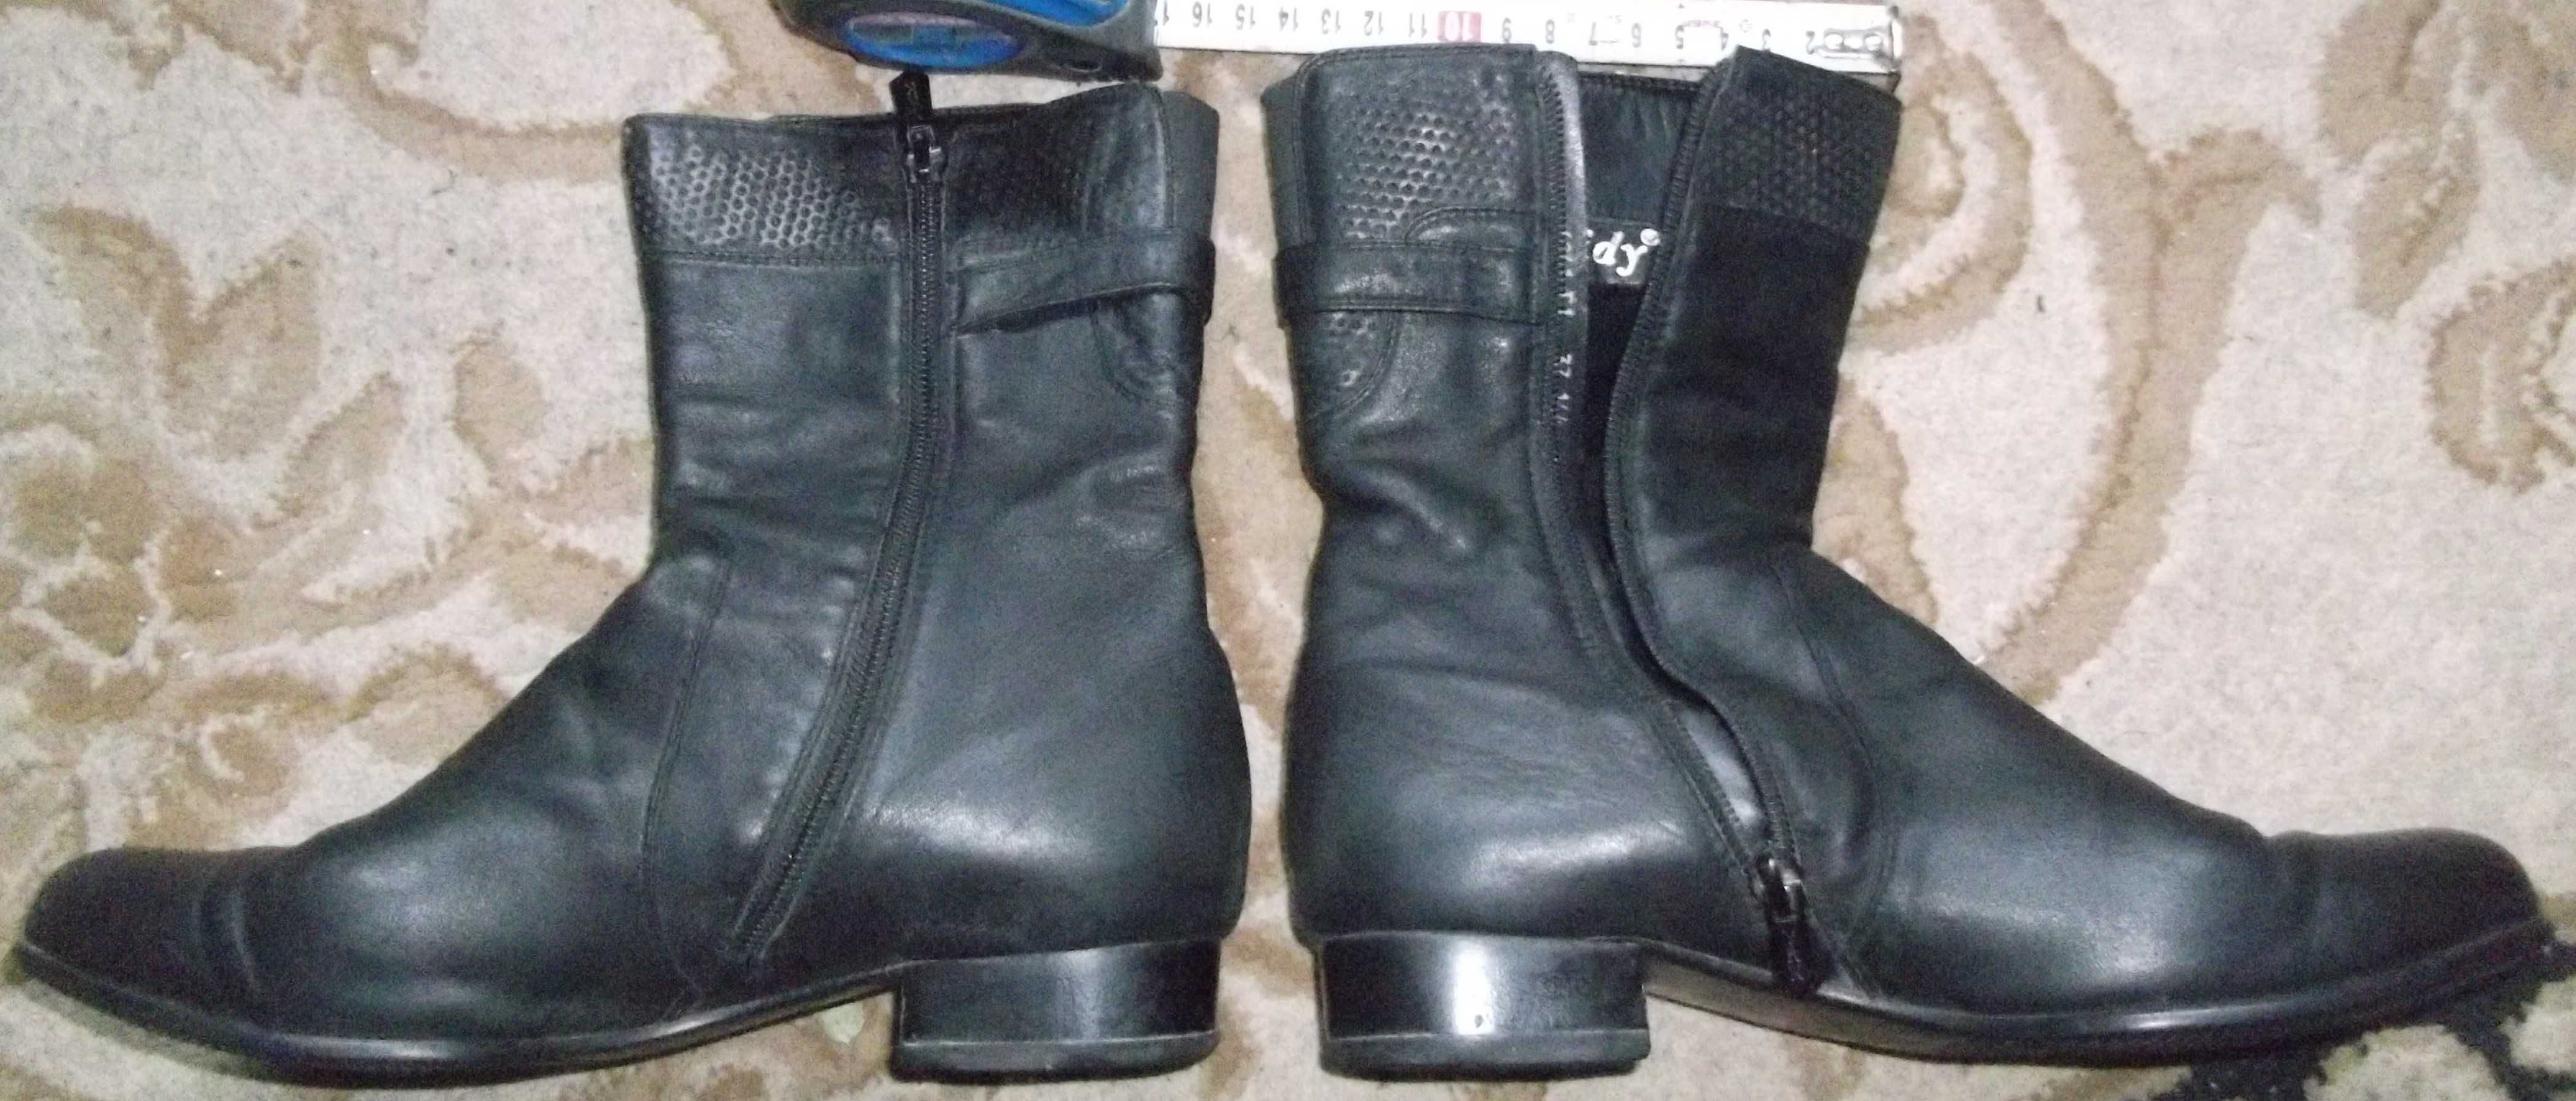 Демисезонные  женские полусапожки сапоги обувь кожаные 37р высокие-20с